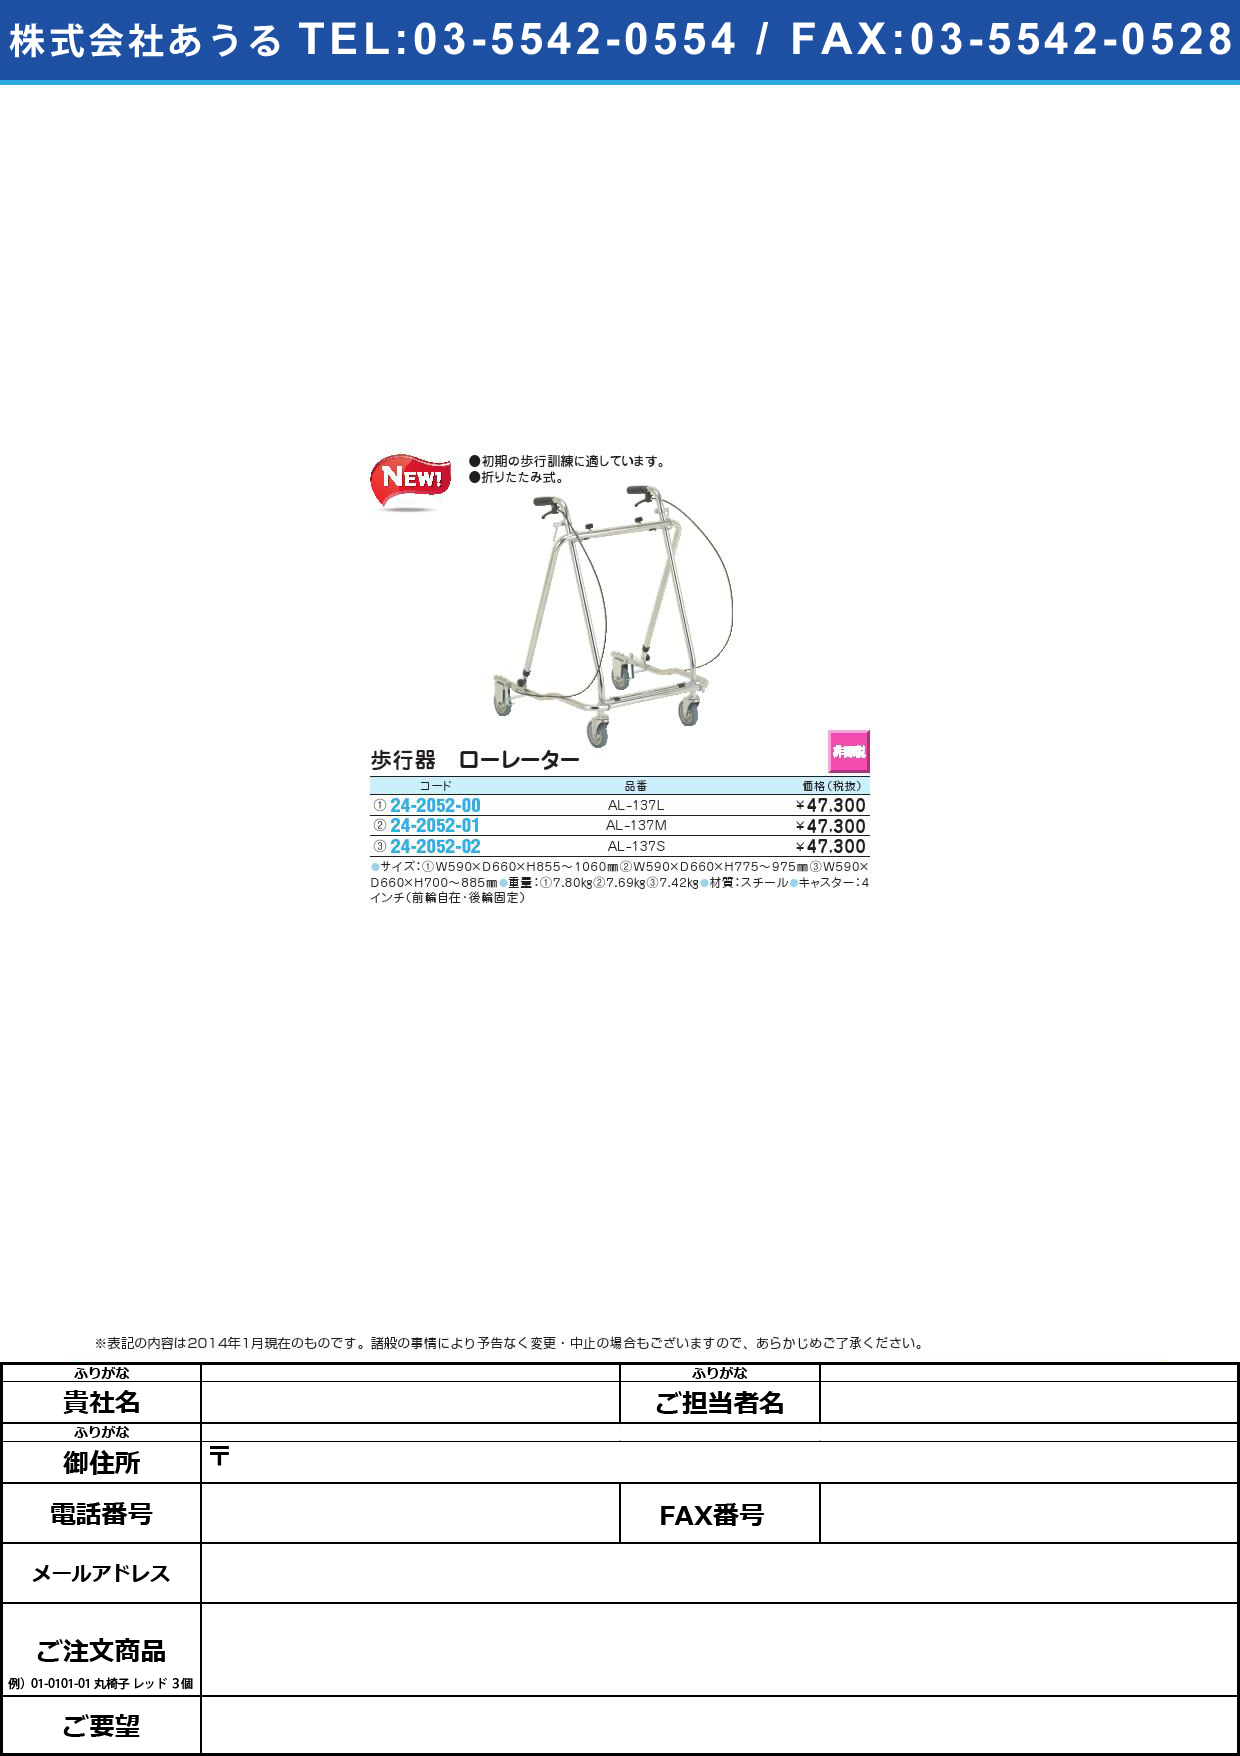 (24-2052-00)歩行器 ローレーター ﾎｺｳｷﾛｰﾚｰﾀｰ(24-2052-00)AL-137L【1台単位】【2014年カタログ商品】